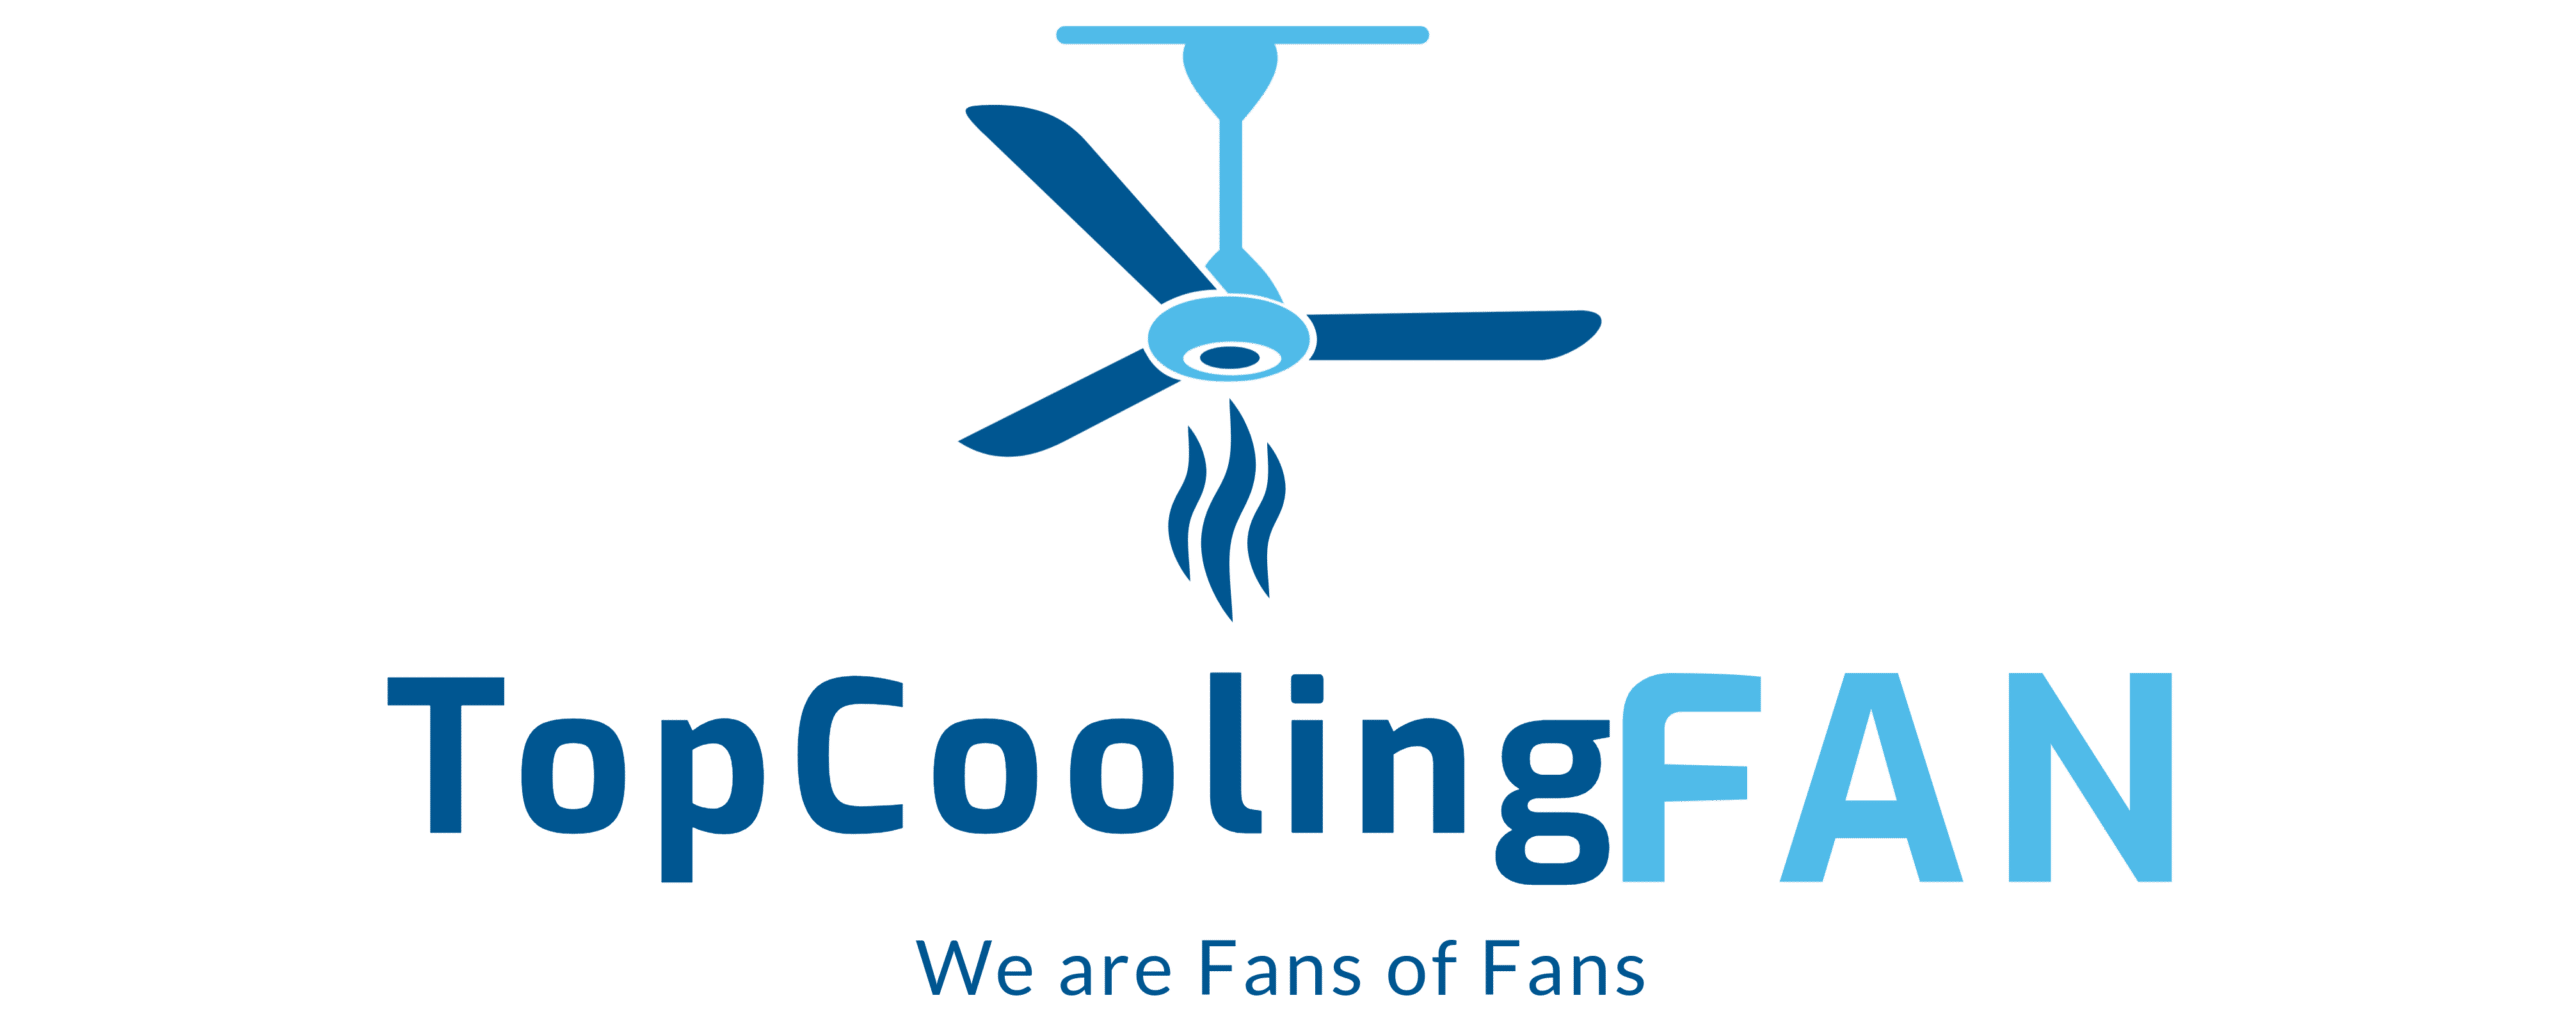 Top cooling fan logo.